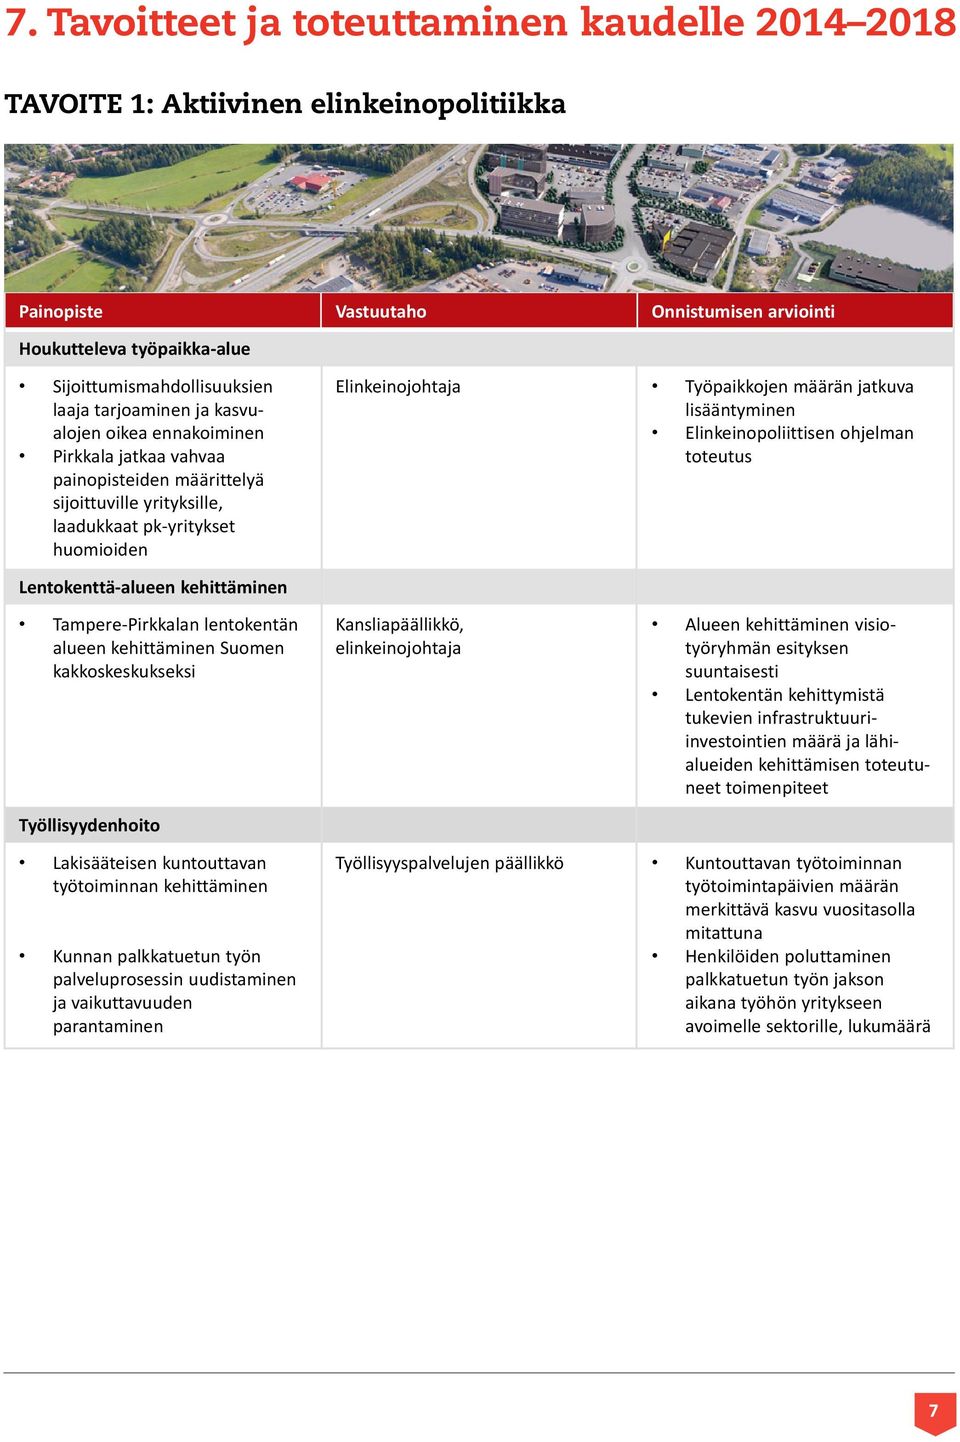 jatkuva lisääntyminen Elinkeinopoliittisen ohjelman toteutus Lentokenttä-alueen kehittäminen Tampere-Pirkkalan lentokentän alueen kehittäminen Suomen kakkoskeskukseksi Työllisyydenhoito